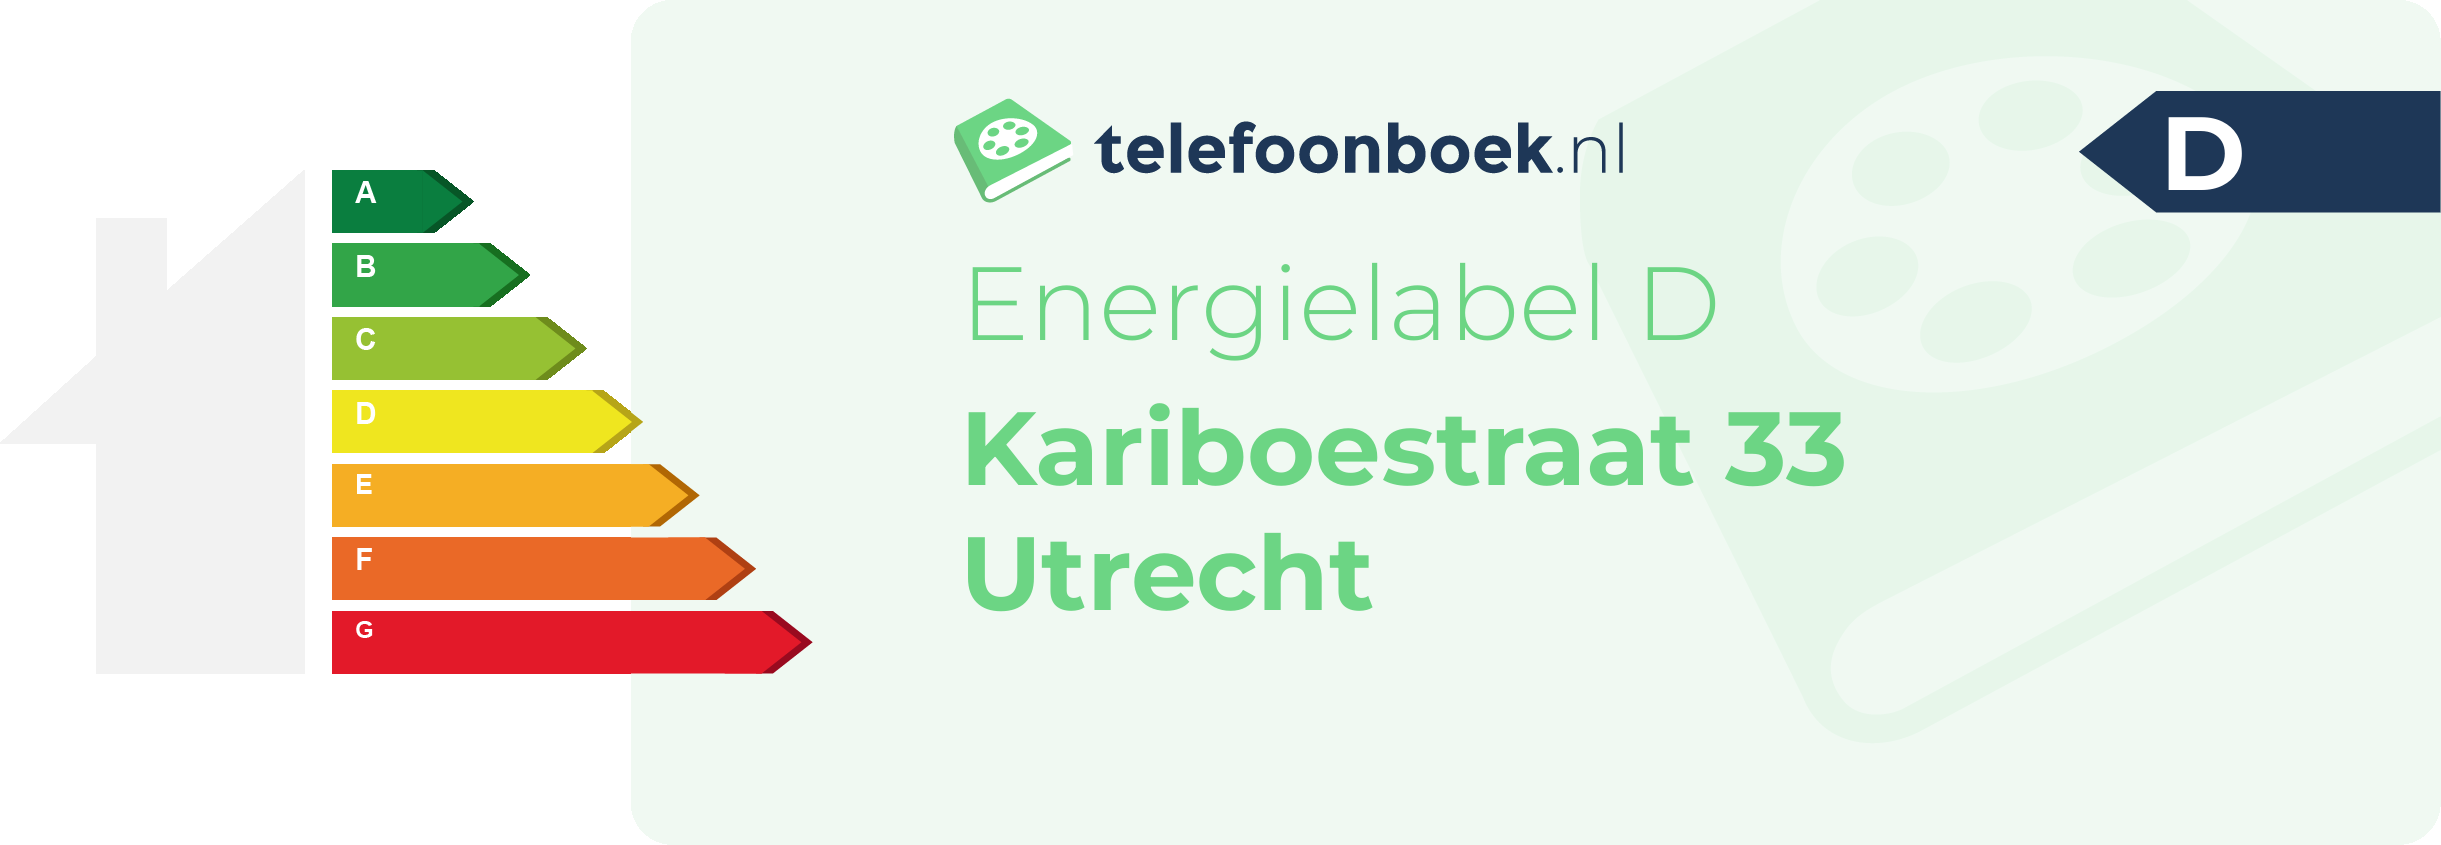 Energielabel Kariboestraat 33 Utrecht